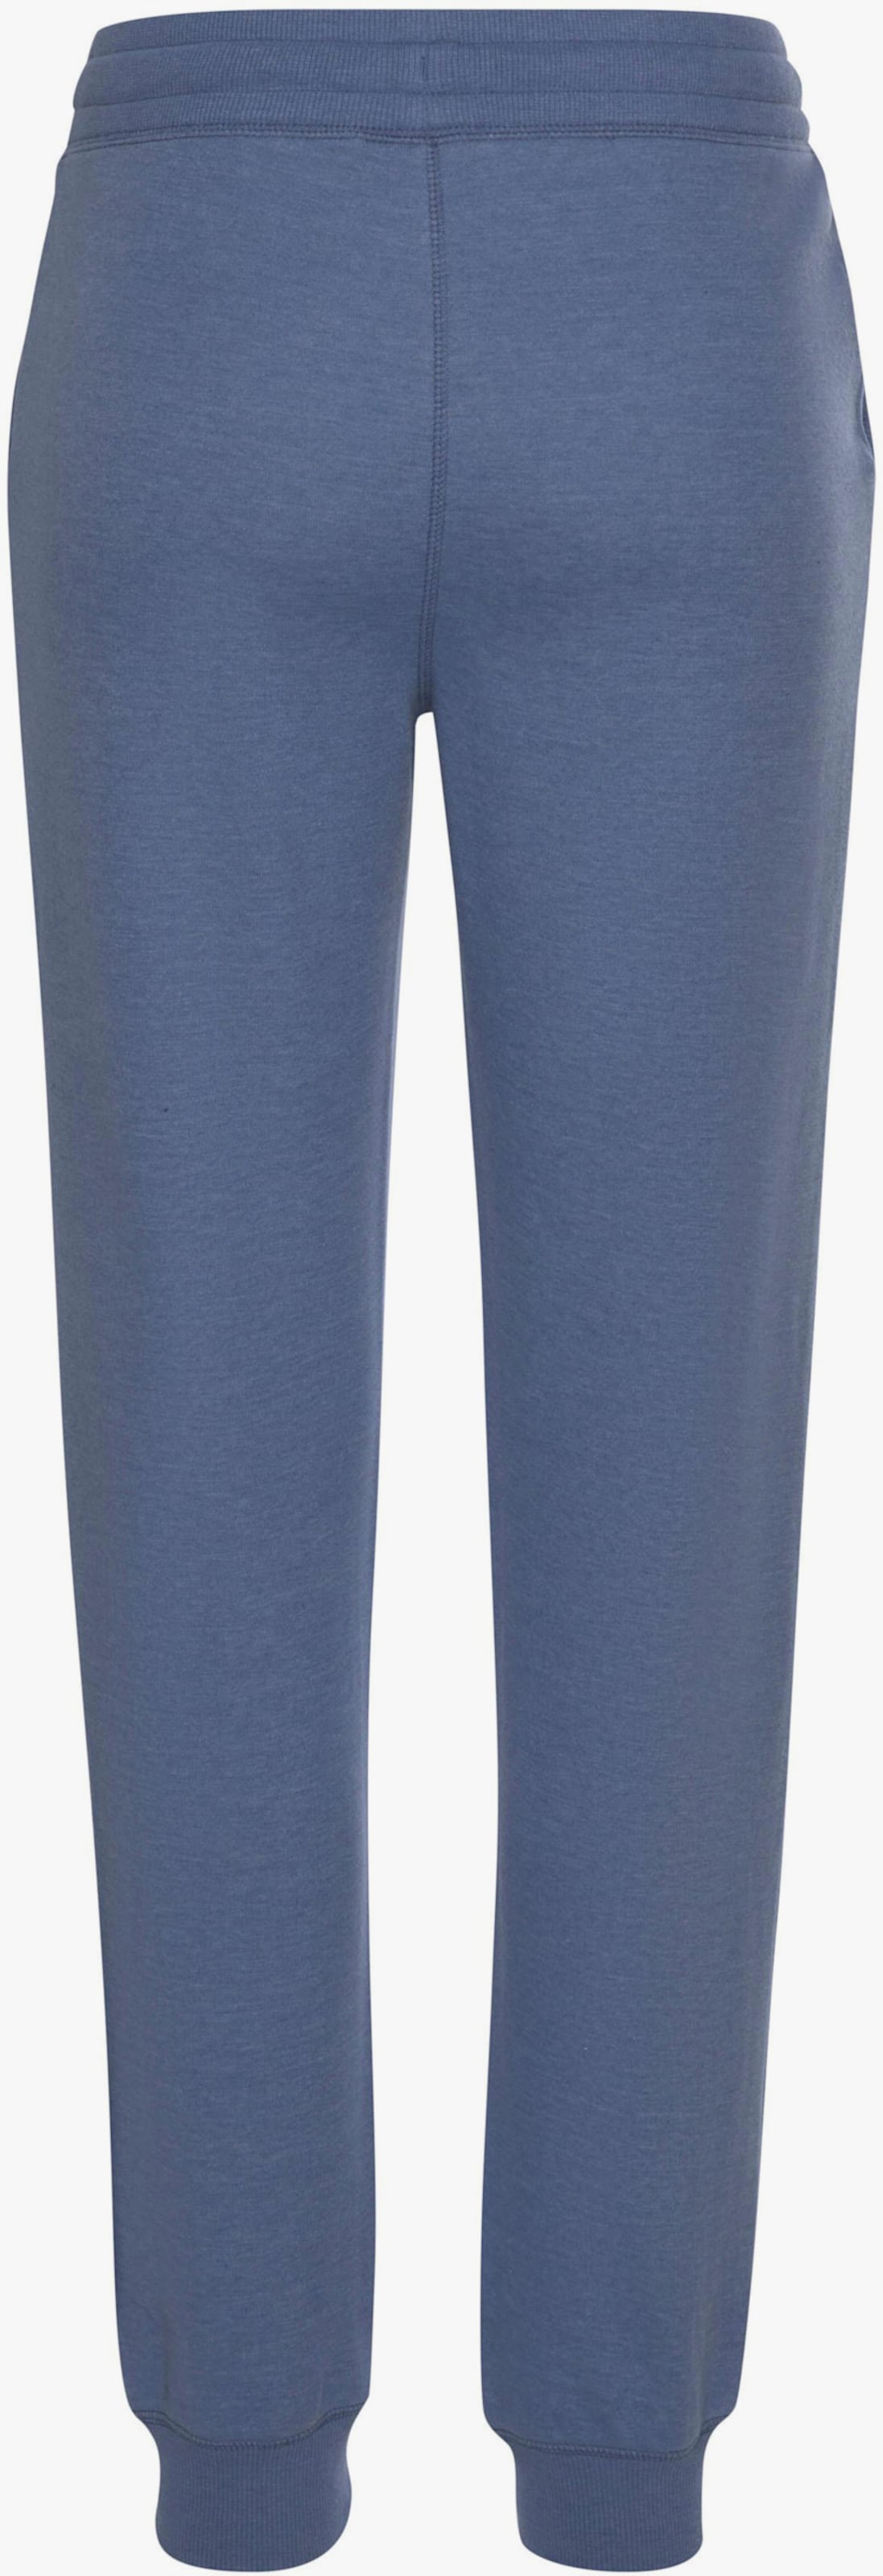 Pantalon lounge - jeans chiné